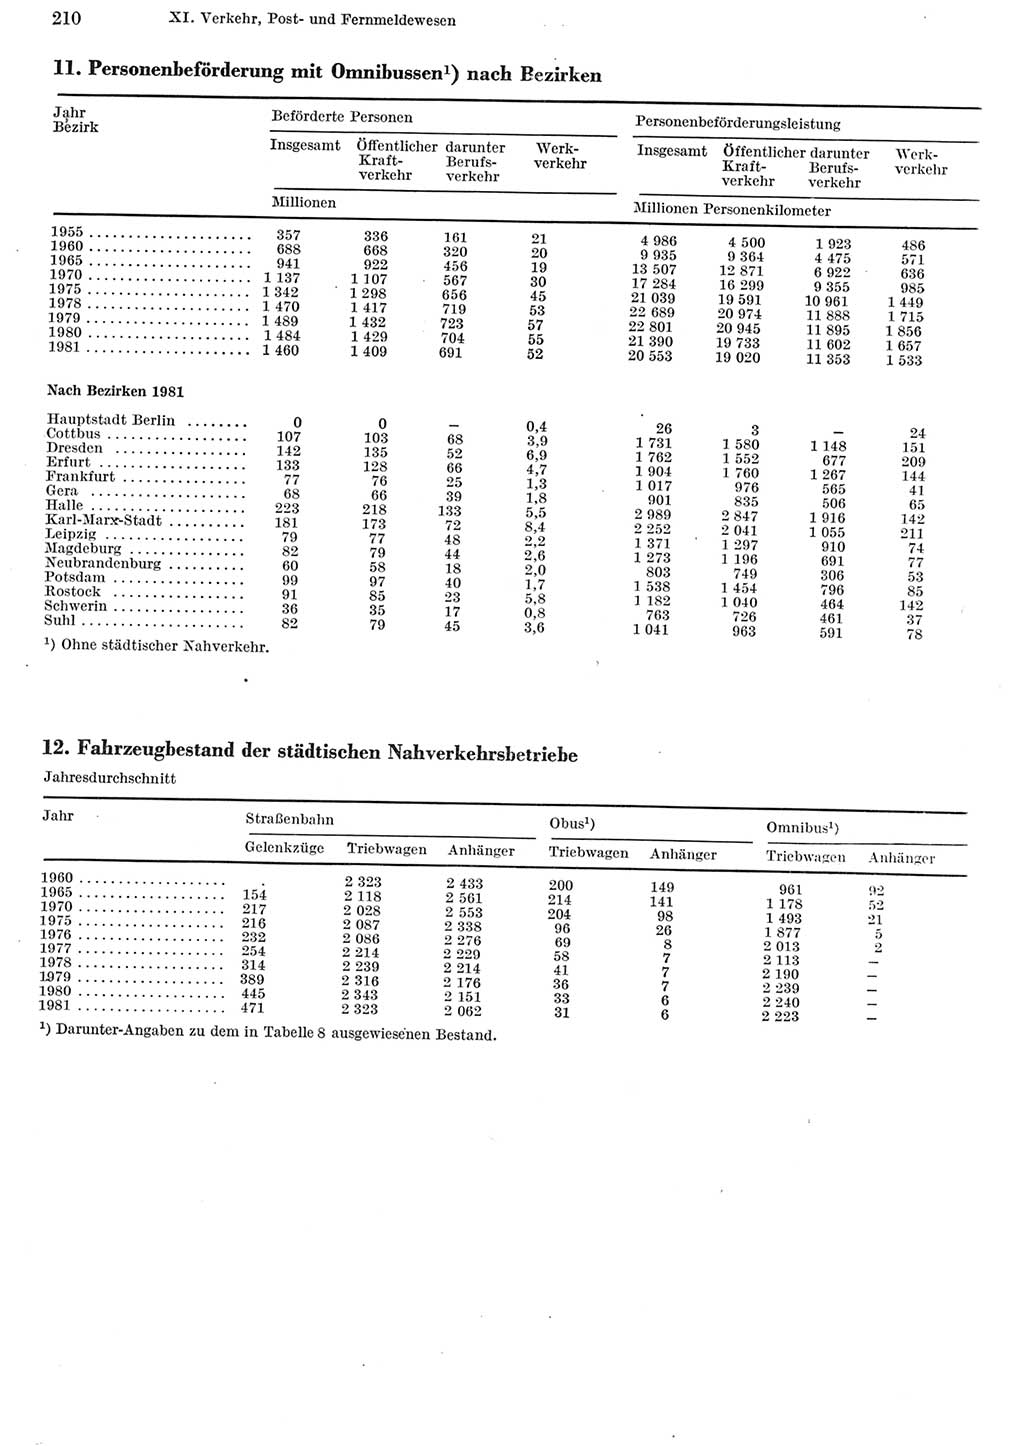 Statistisches Jahrbuch der Deutschen Demokratischen Republik (DDR) 1982, Seite 210 (Stat. Jb. DDR 1982, S. 210)